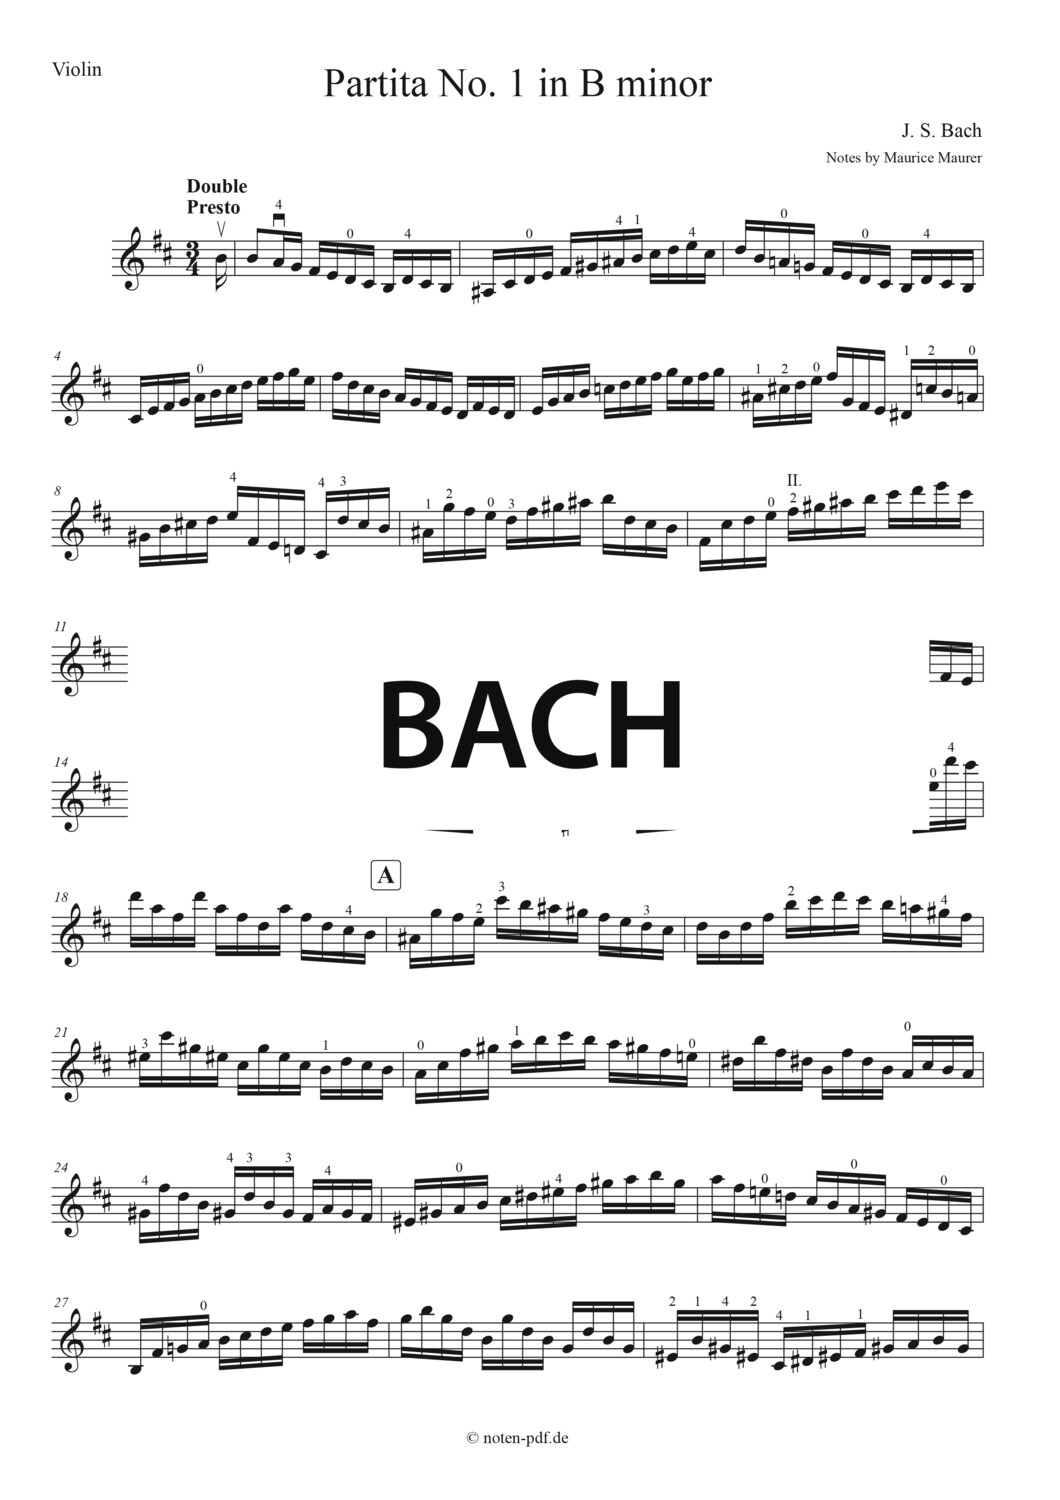 Bach: Partita No. 1 - 4. Mov. "Double"